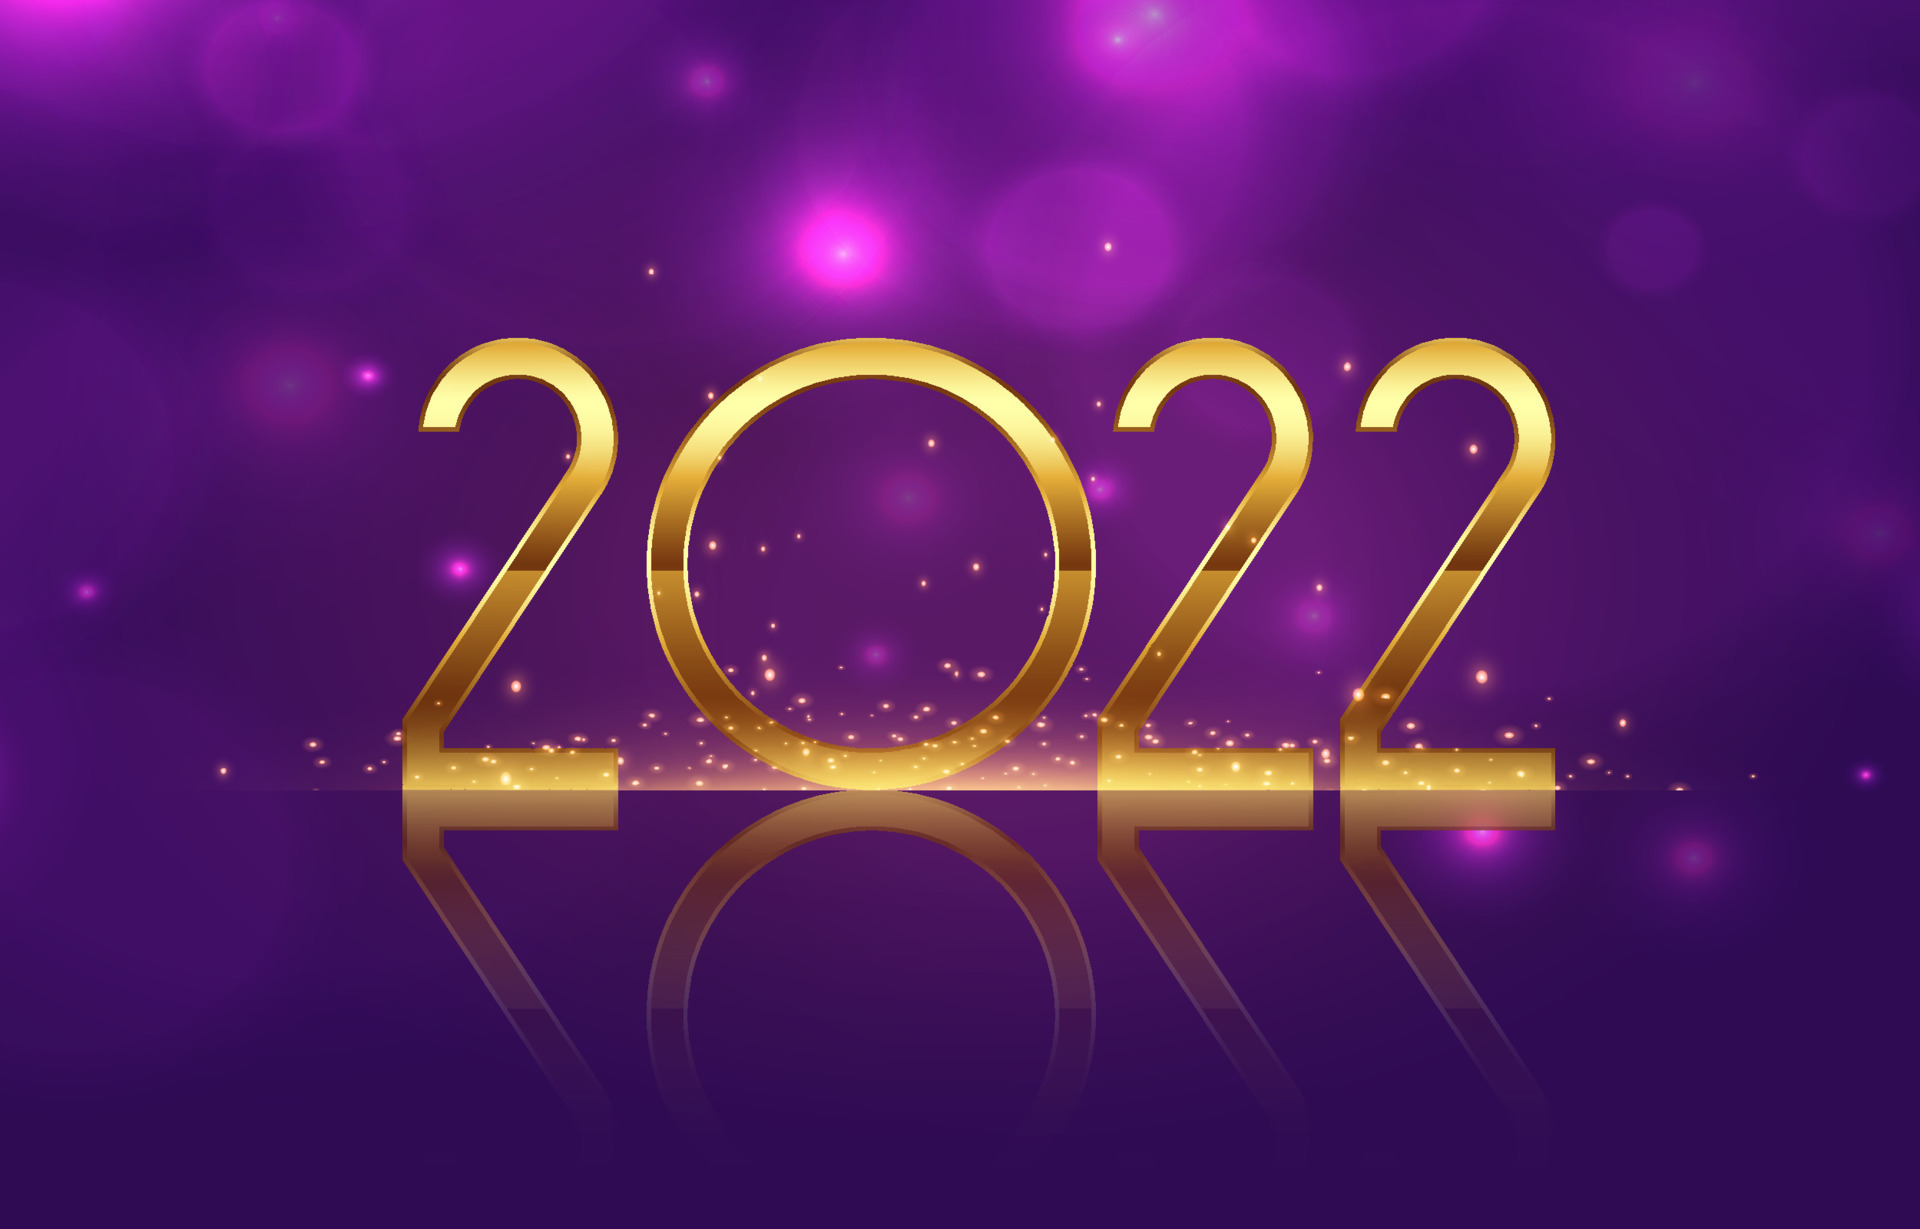 2022新年快樂圖 免費下載 | 天天瘋後製